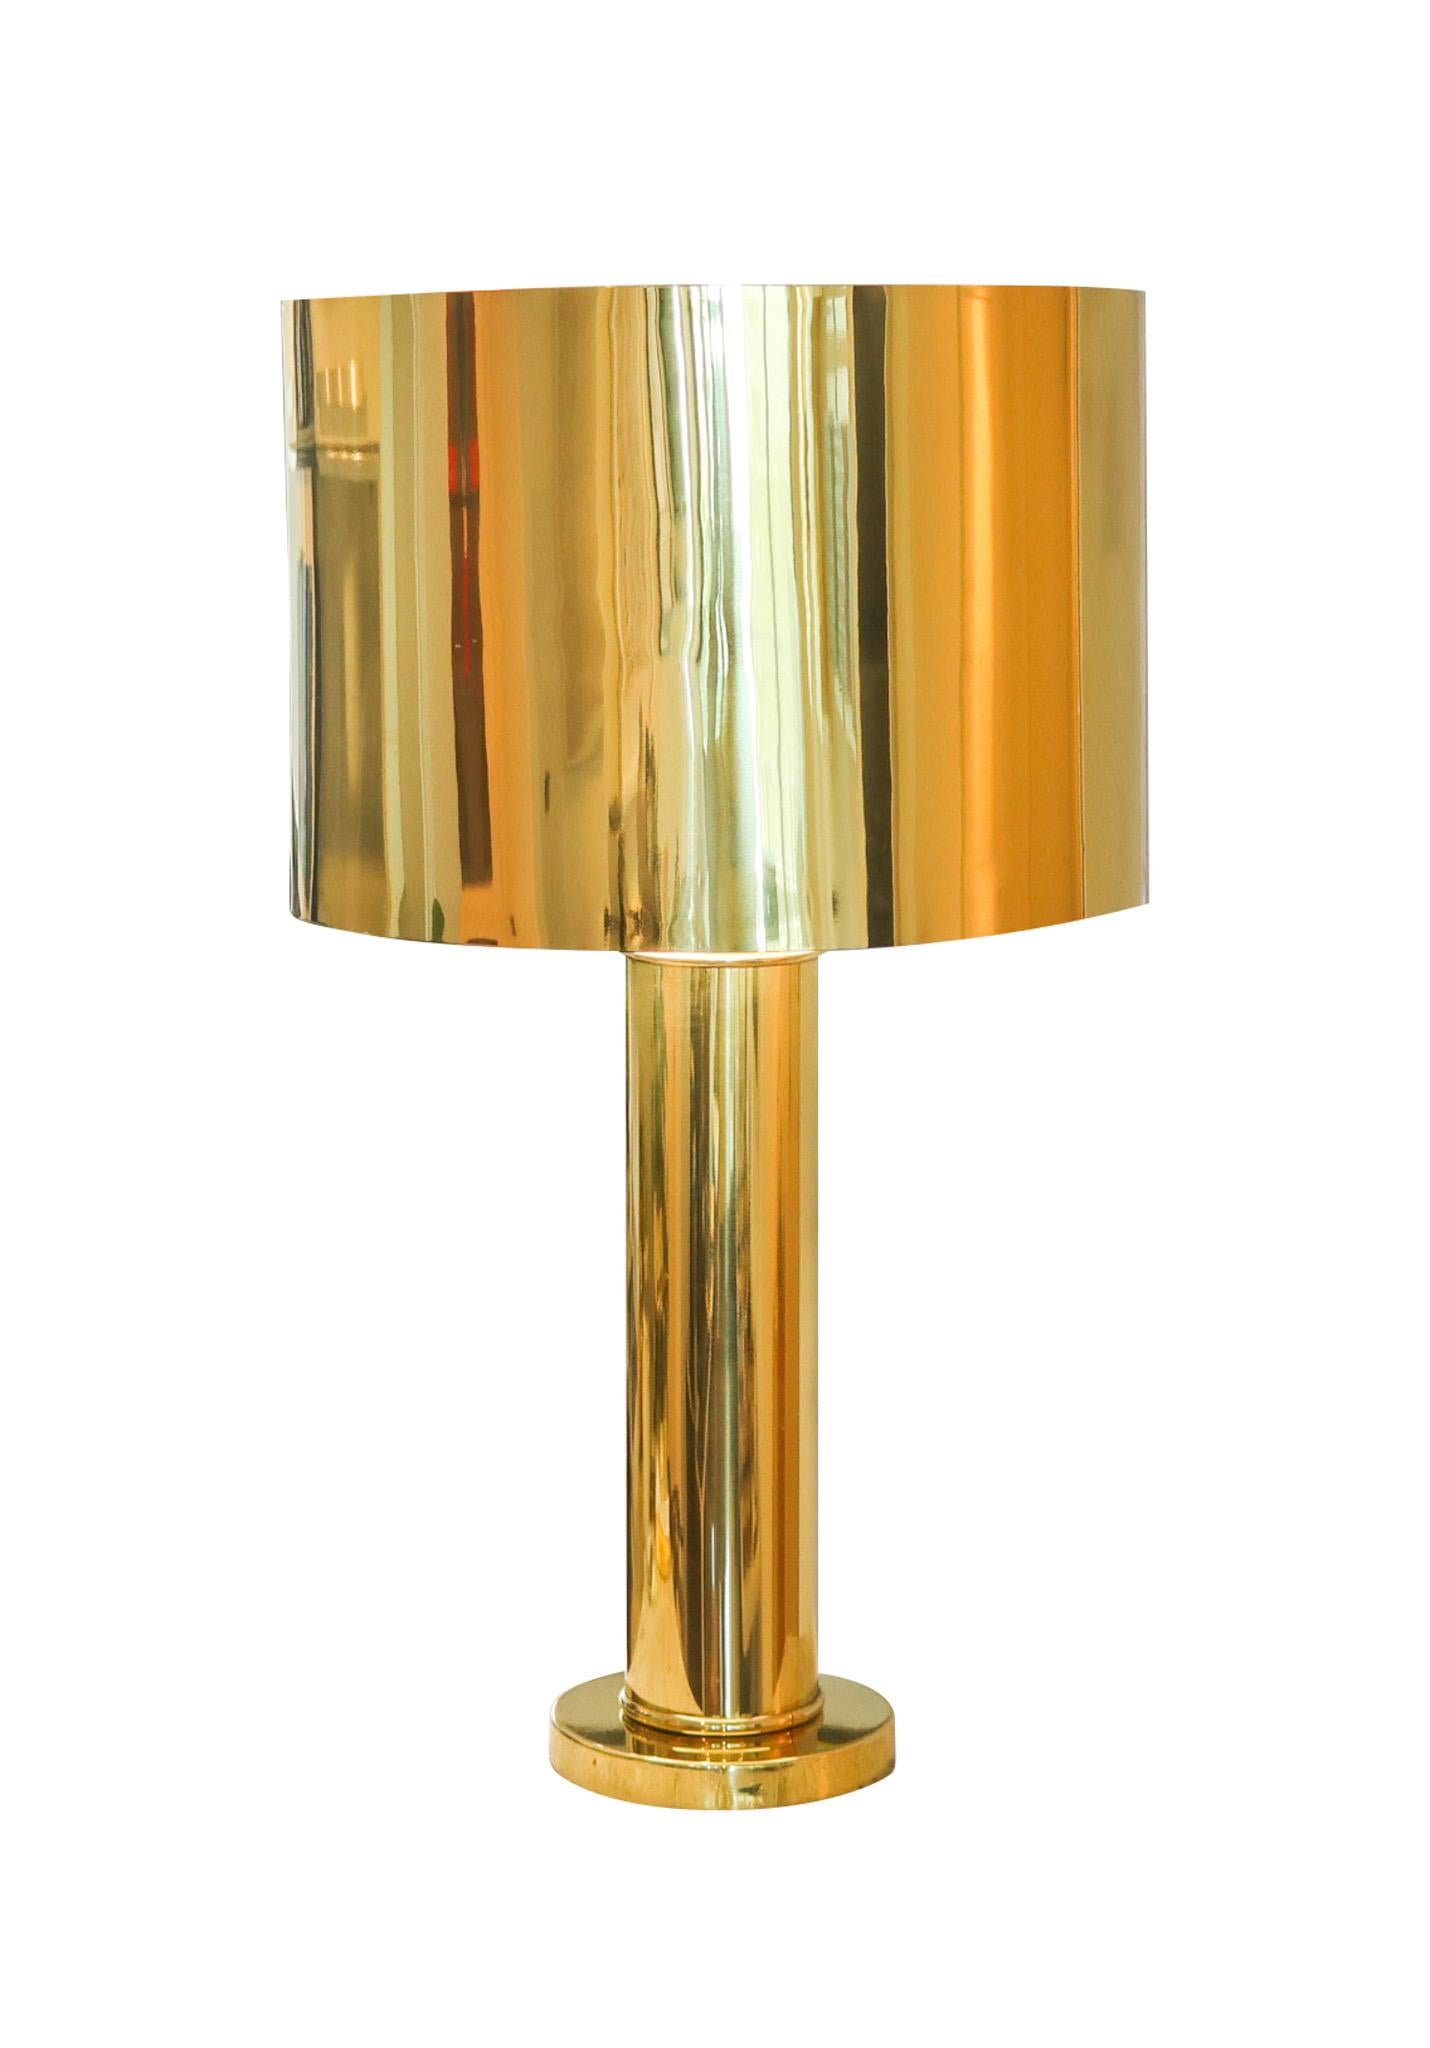 Lampe de bureau conçue par George Kovacs.

Une lampe de bureau exceptionnelle, monumentale et surdimensionnée, créée en Amérique dans les ateliers de George Kovacs, dans les années 1960-1970. Cette grande lampe vintage a été conçue avec des motifs